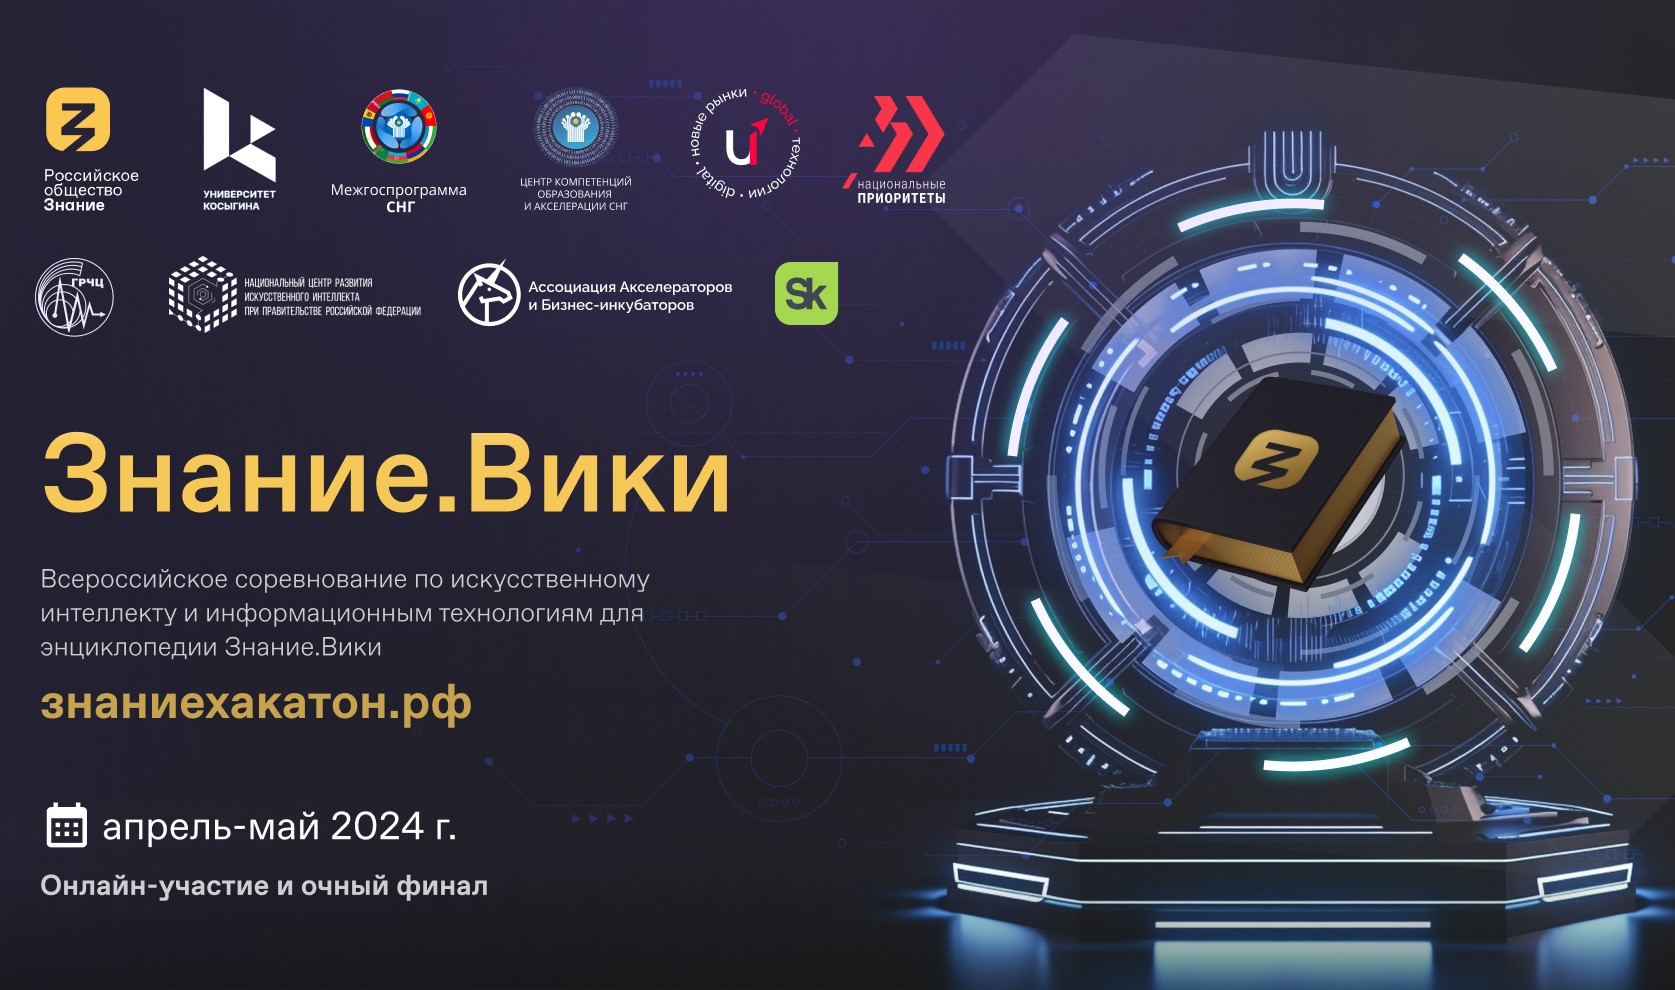 Всероссийское соревнование по искусственному интеллекту и информационным технологиям 